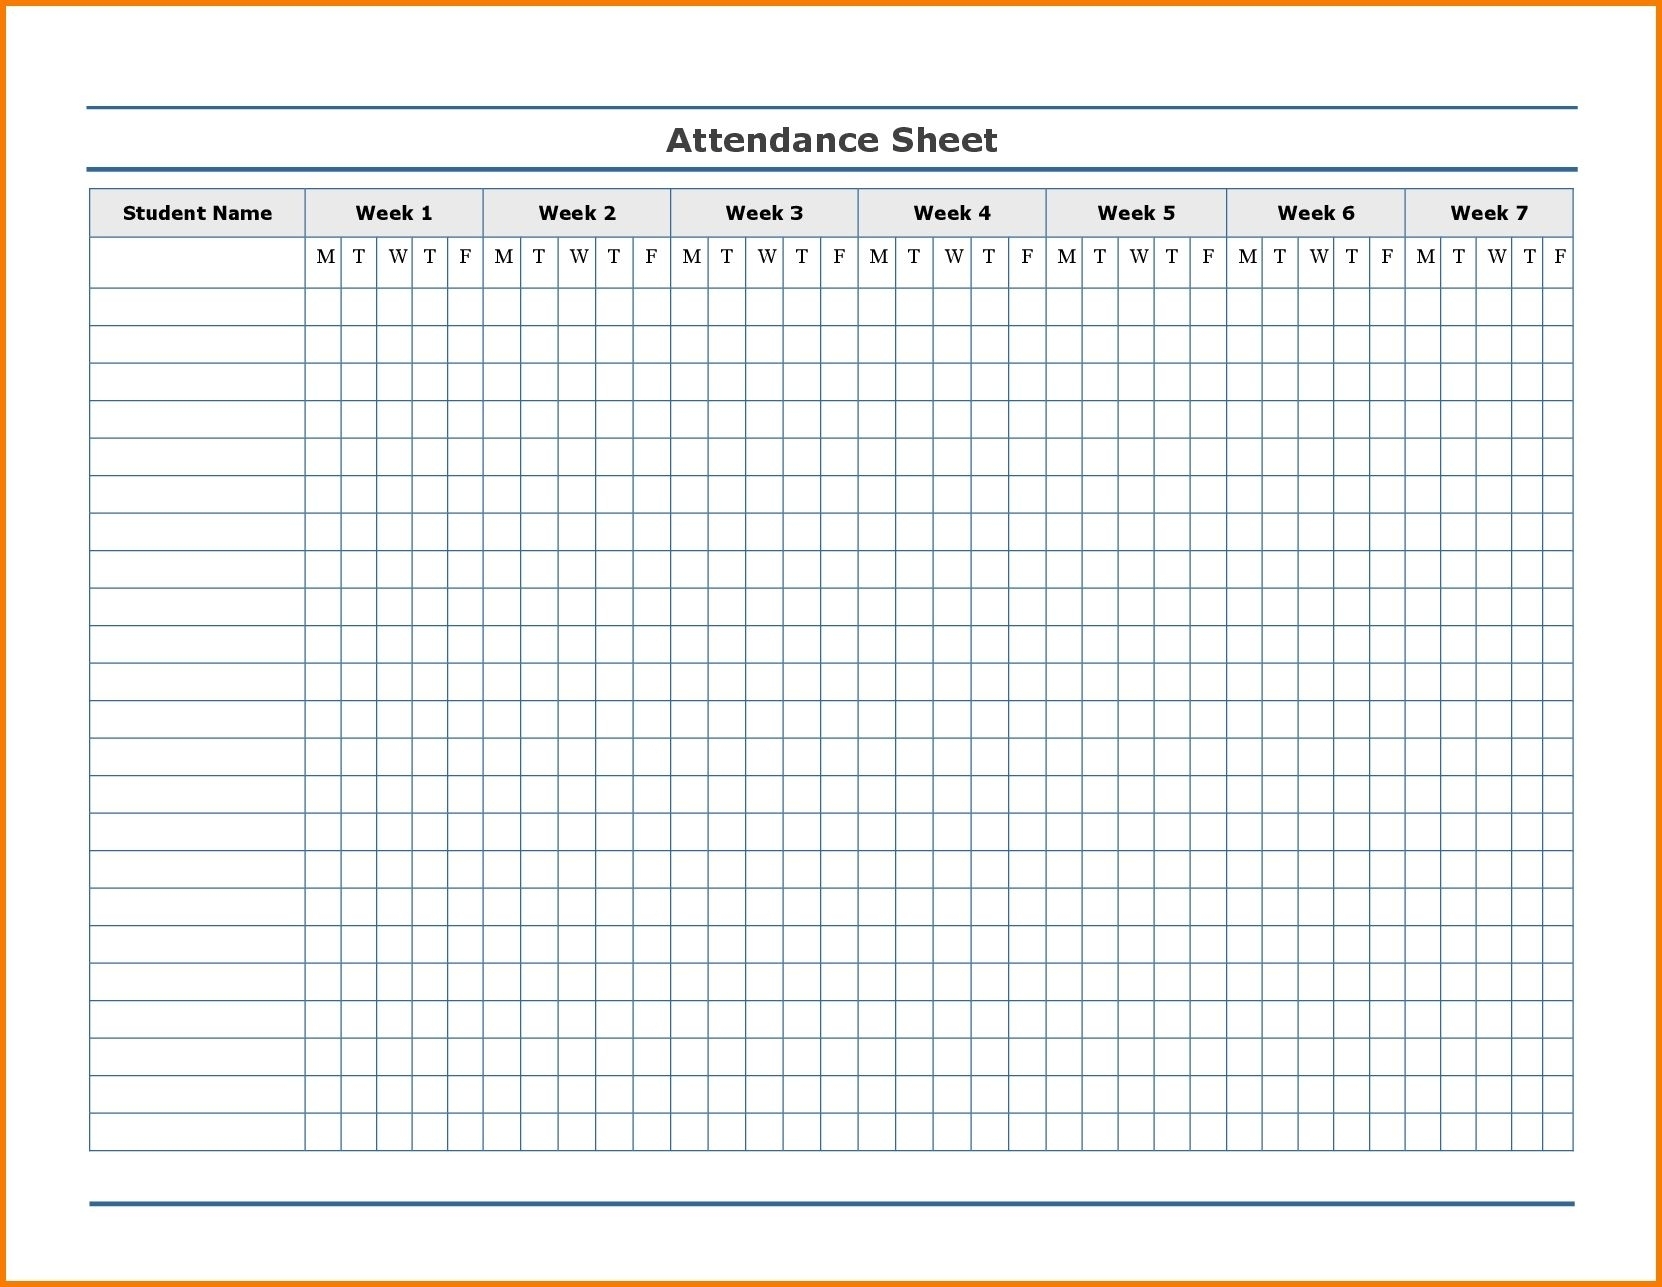 Free Employee Attendance Calendar | Employee Tracker throughout Free Employee Attendance Calendar 2020